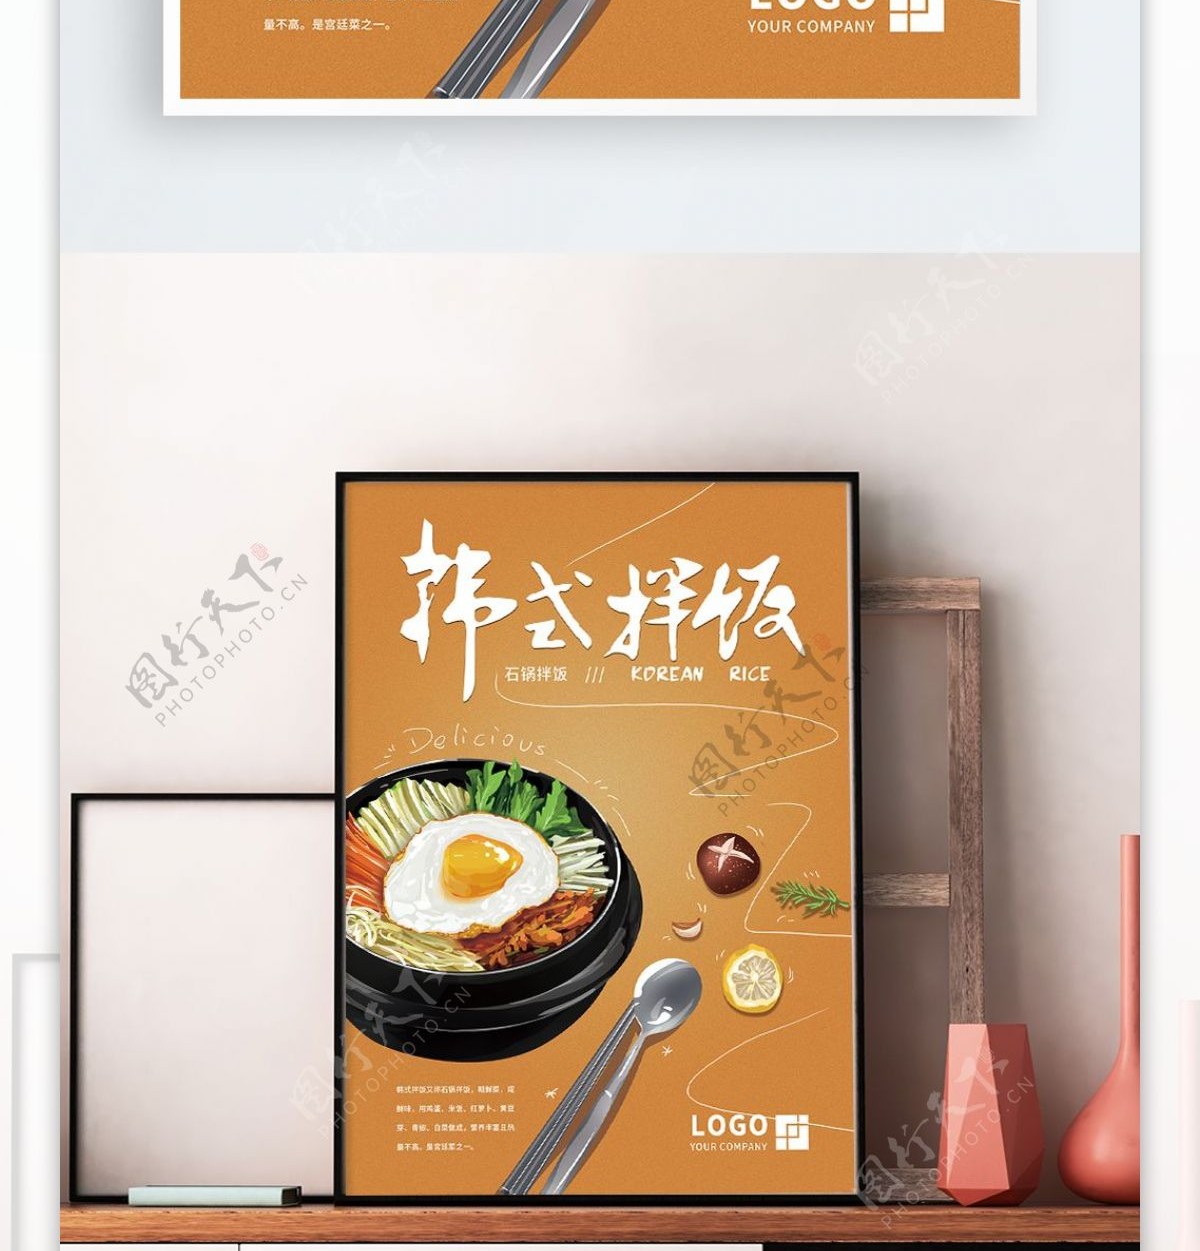 原创手绘韩式石锅拌饭海报